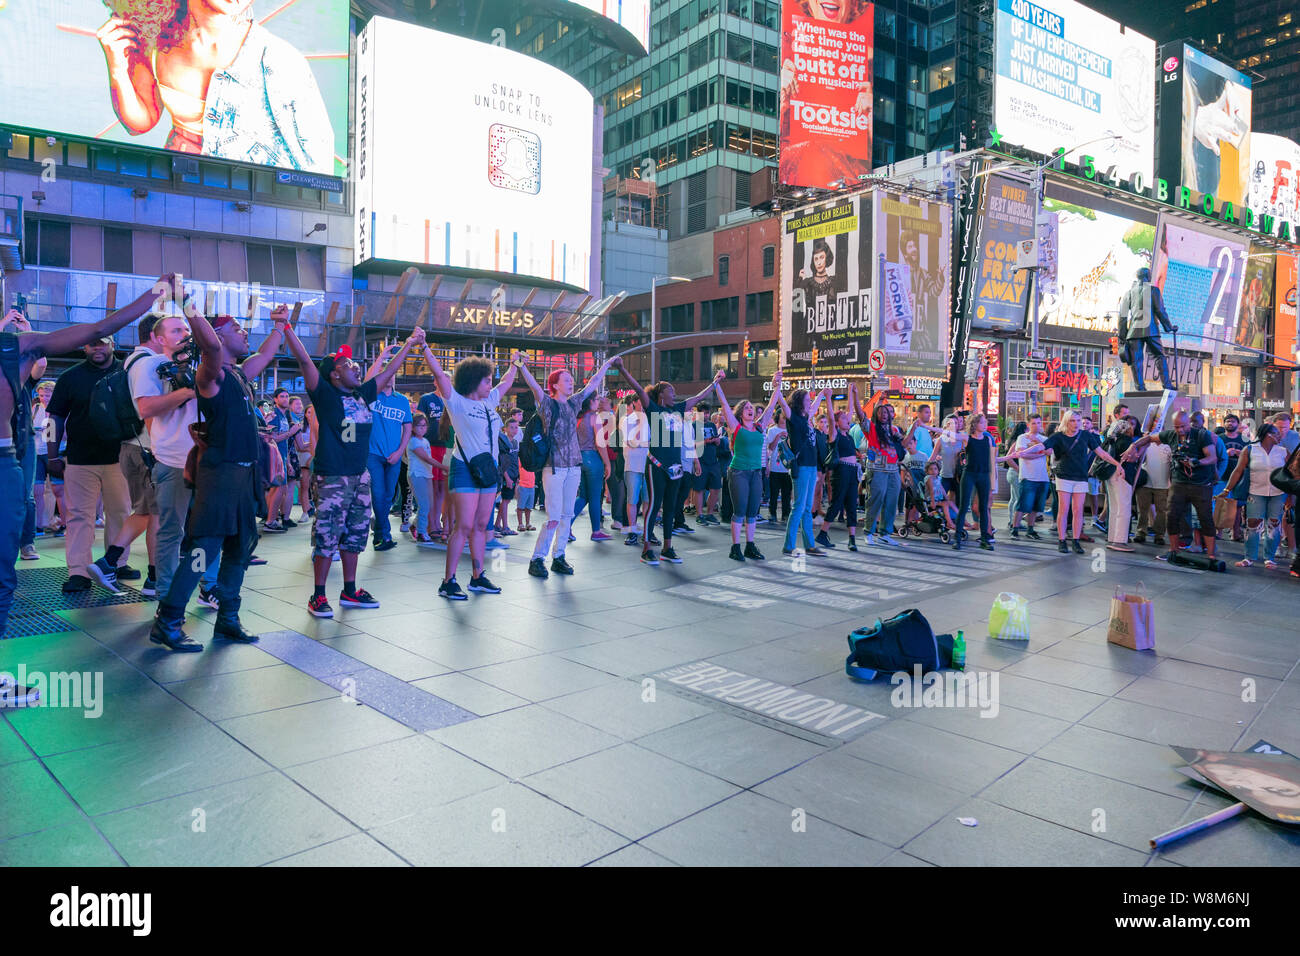 New York, NY - August 9, 2019: Mitglieder von NYC Herunterfahren Gruppe Protest in Unterstützung von Mike Brown und Eric Garner und schwarze Leben Materie am Times Square inszeniert Stockfoto